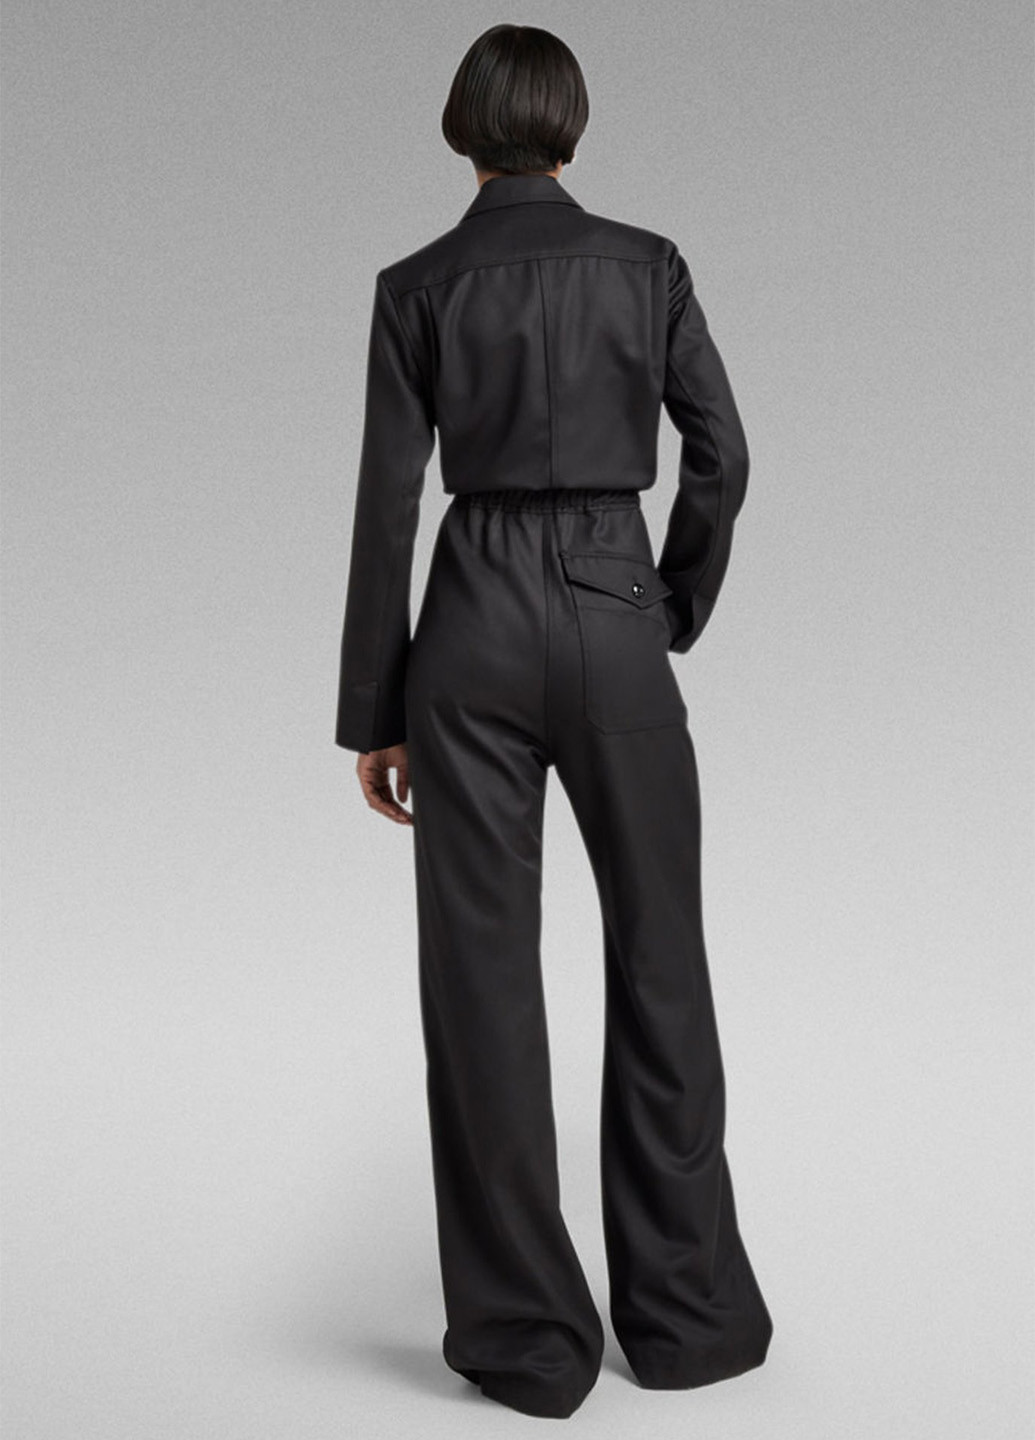 Комбинезон G-Star Raw комбинезон-брюки однотонный чёрный кэжуал шерсть, полиэстер